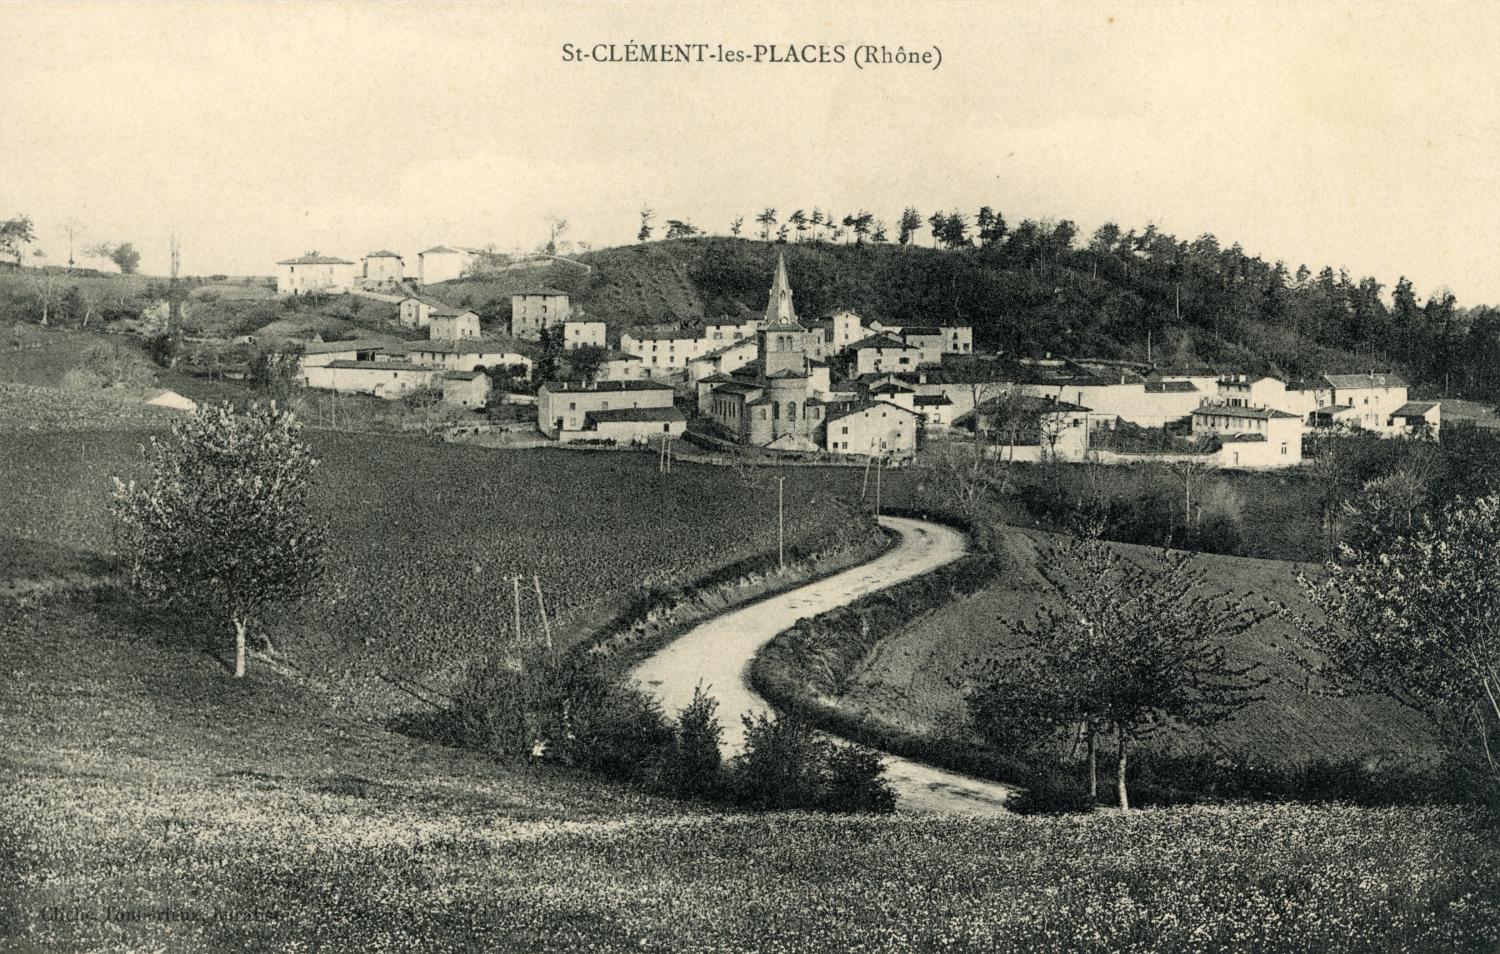 St-Clément-les-Places (Rhône)